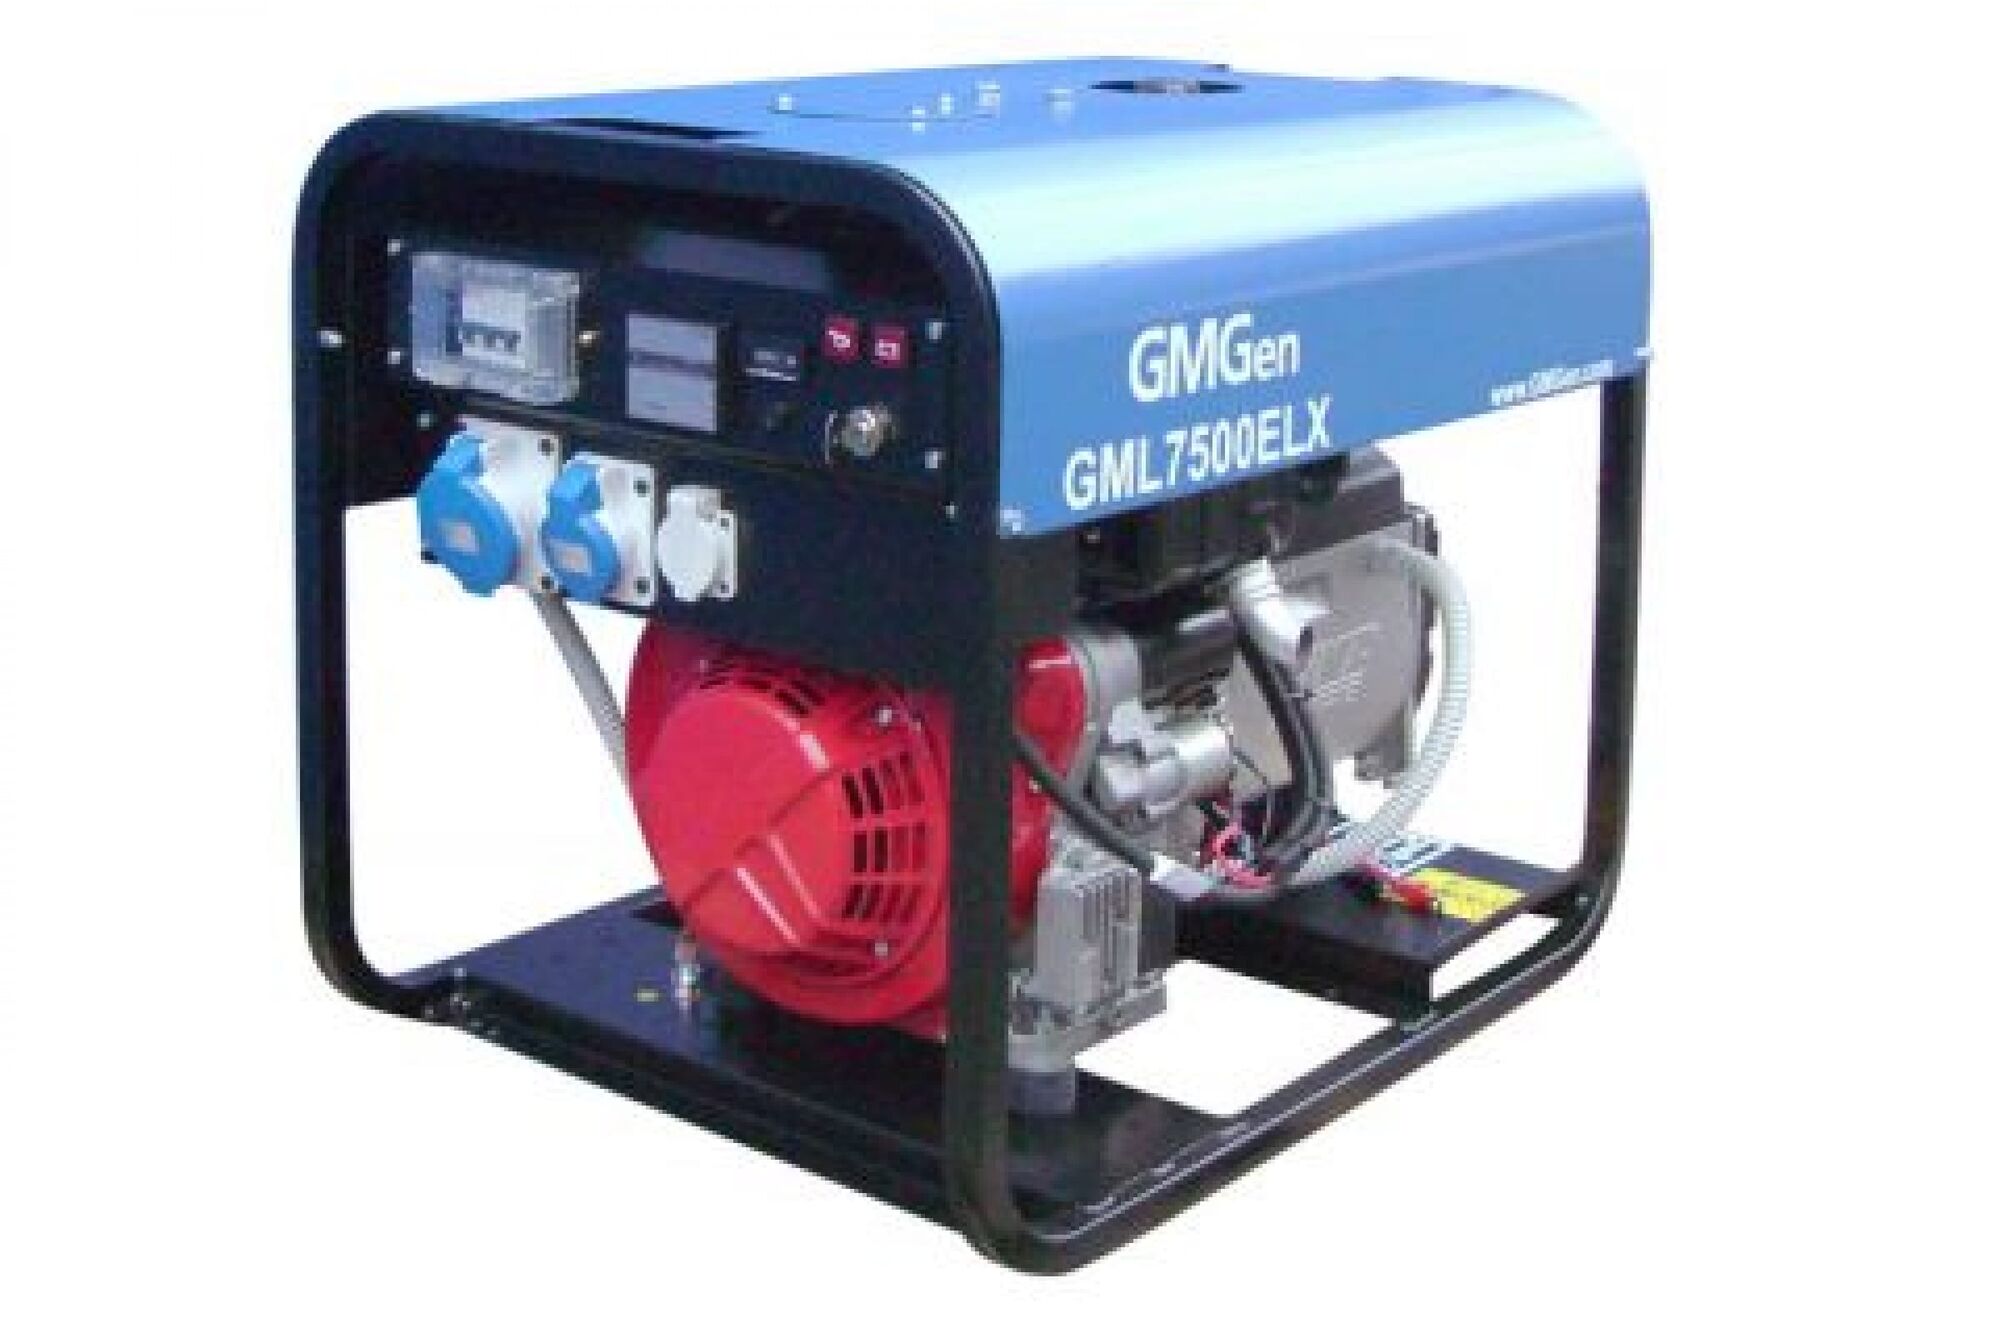 Дизель генератор GMGen Power Systems GML7500ELX 5.1 кВт, 220 В 501855